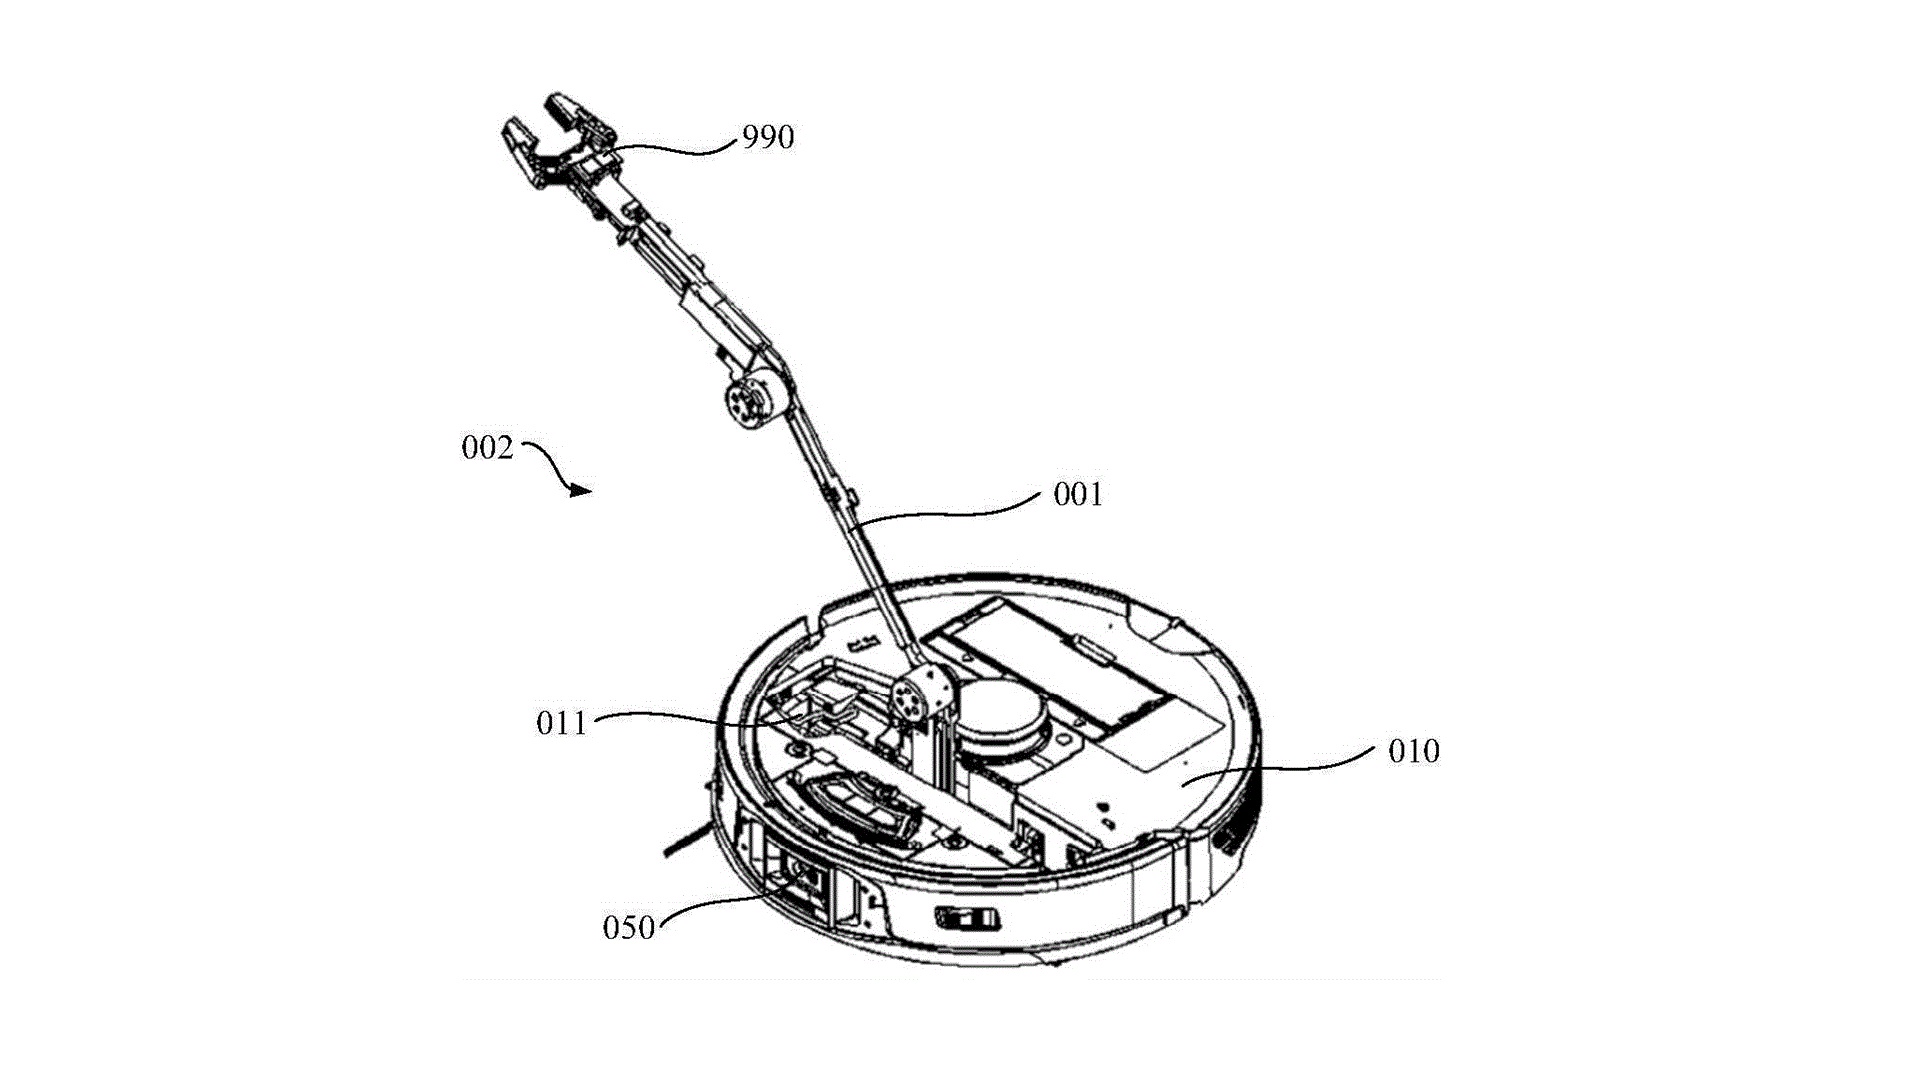 #Wer dachte, bei Saugrobotern gibt es nichts Neues mehr, sollte sich dieses Roborock-Patent ansehen